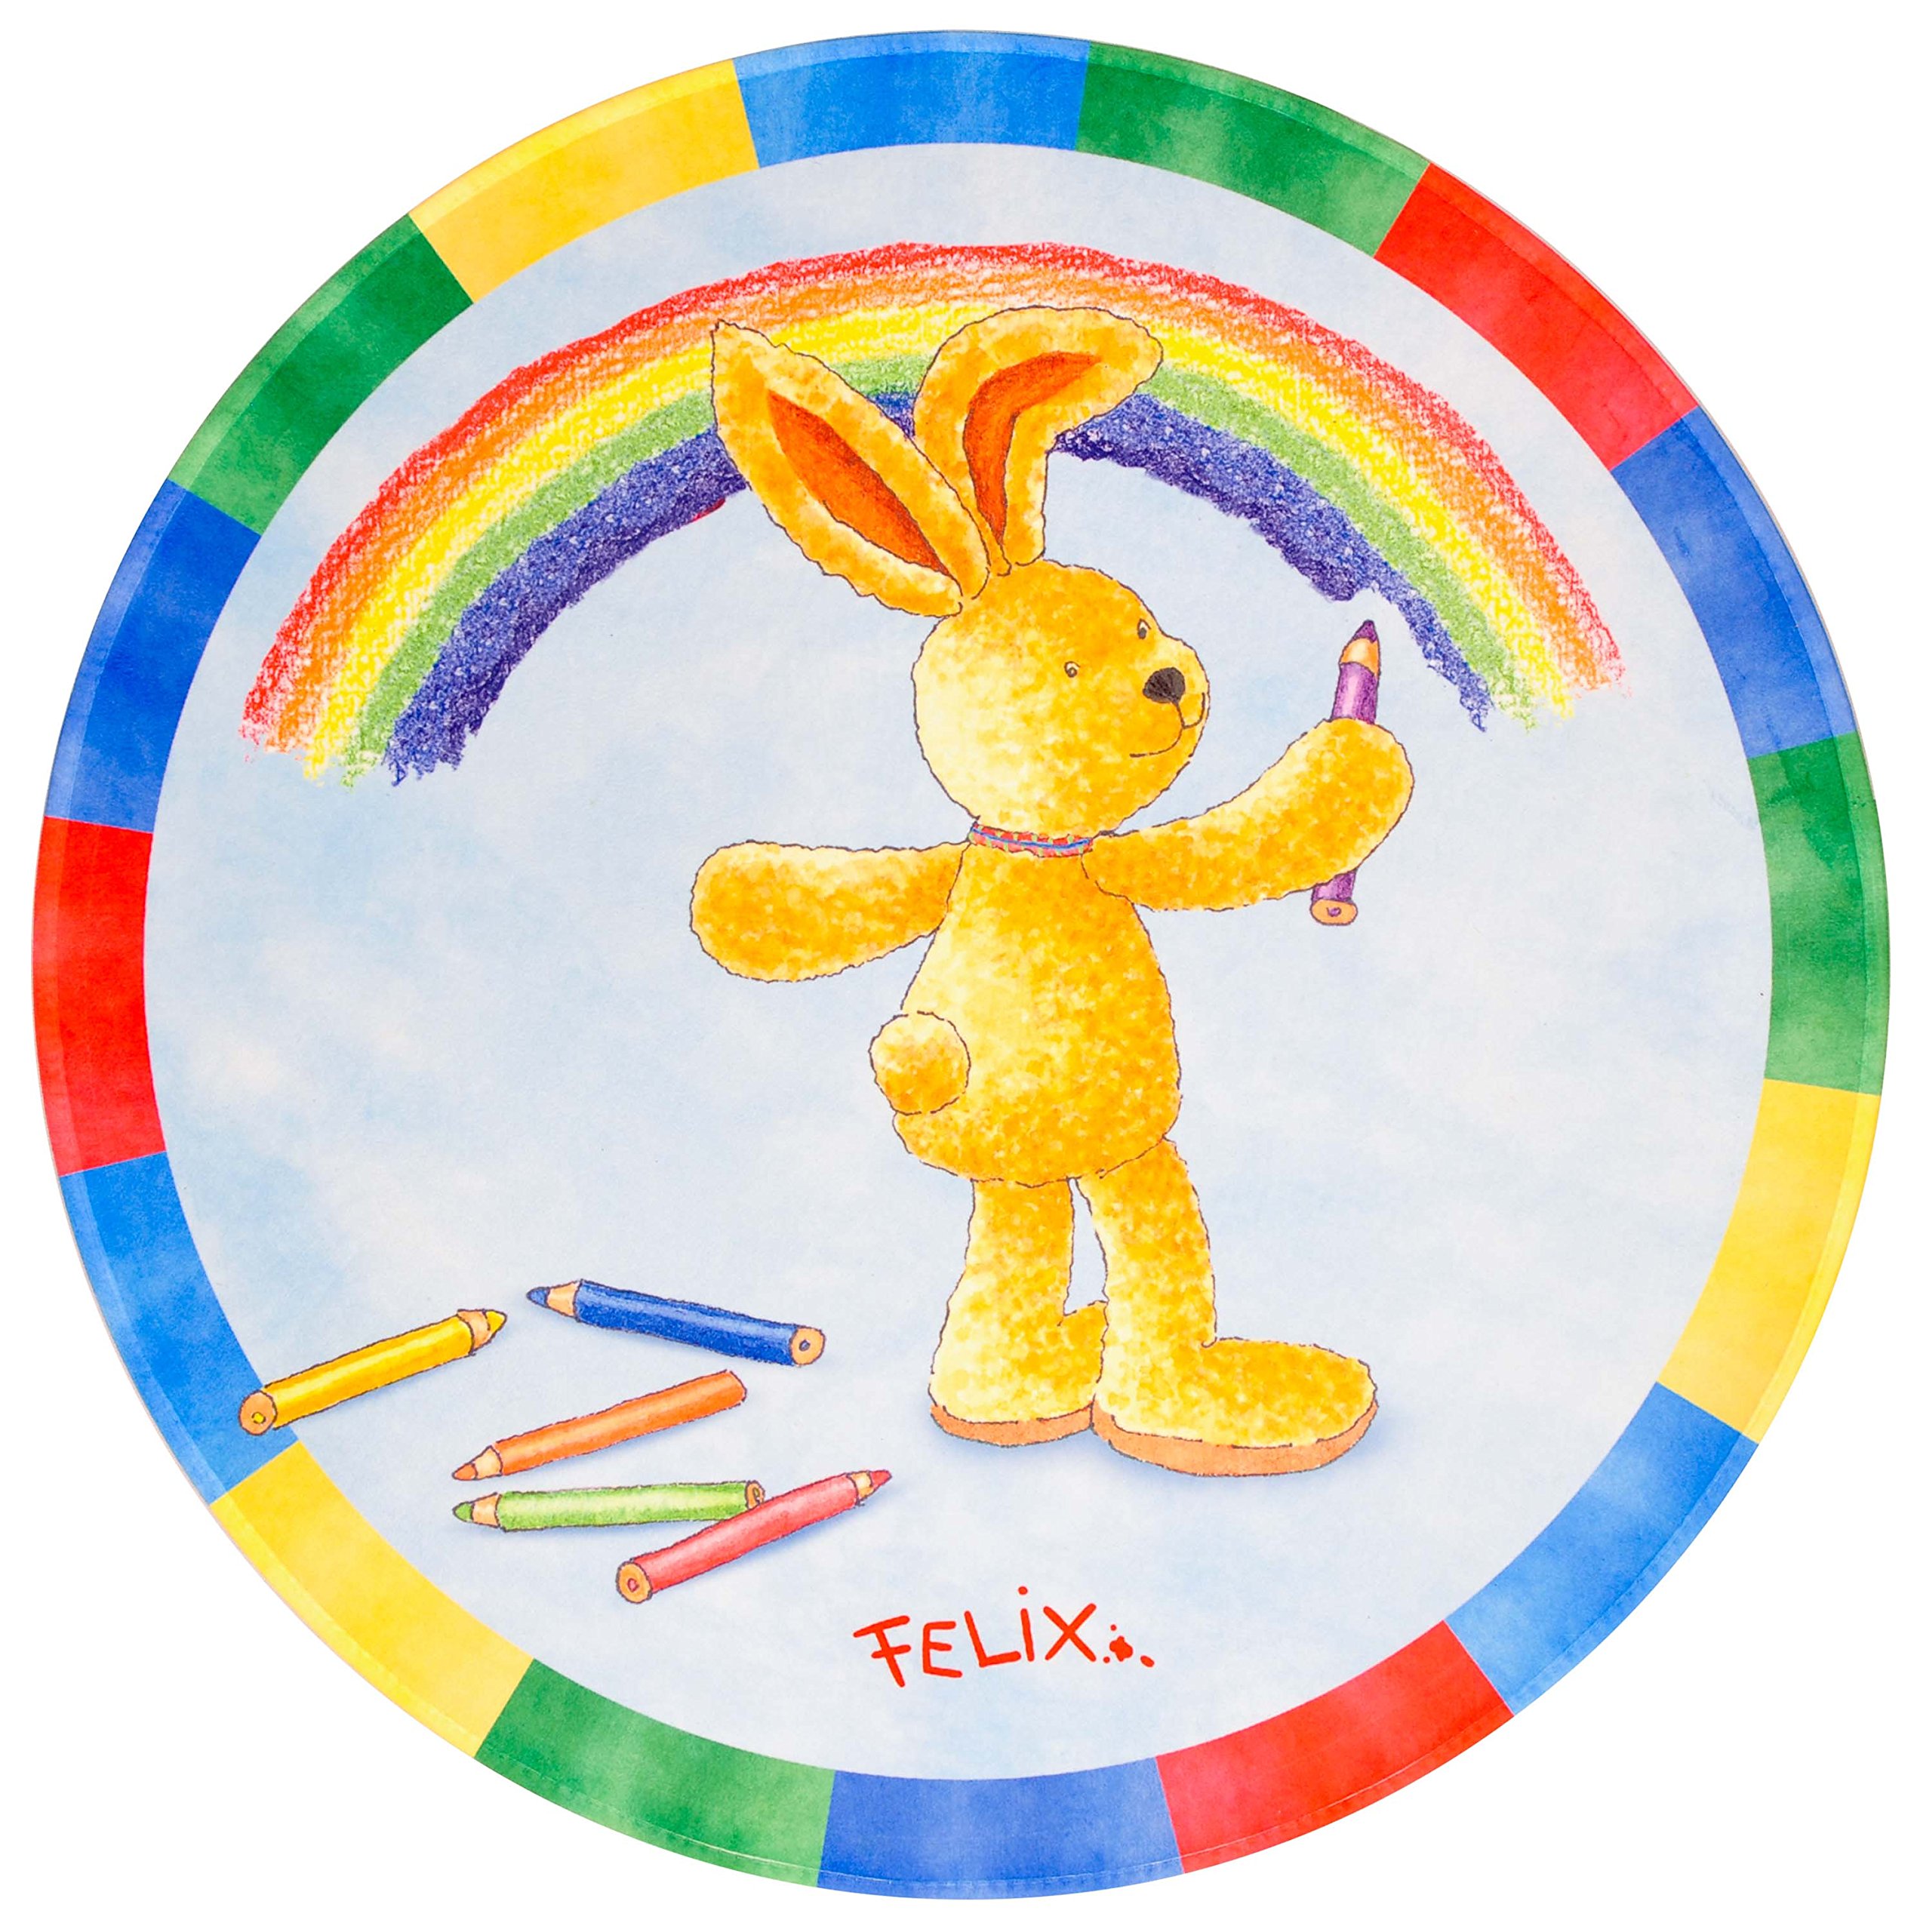 Felix der Hase Kinderteppich mit Regenbogen Farben, Weich und Soft Ø100 cm Rund, Farbe Hellblau, Öko-Tex zertifiziert, Bildmotiv für Jungen und Mädchen